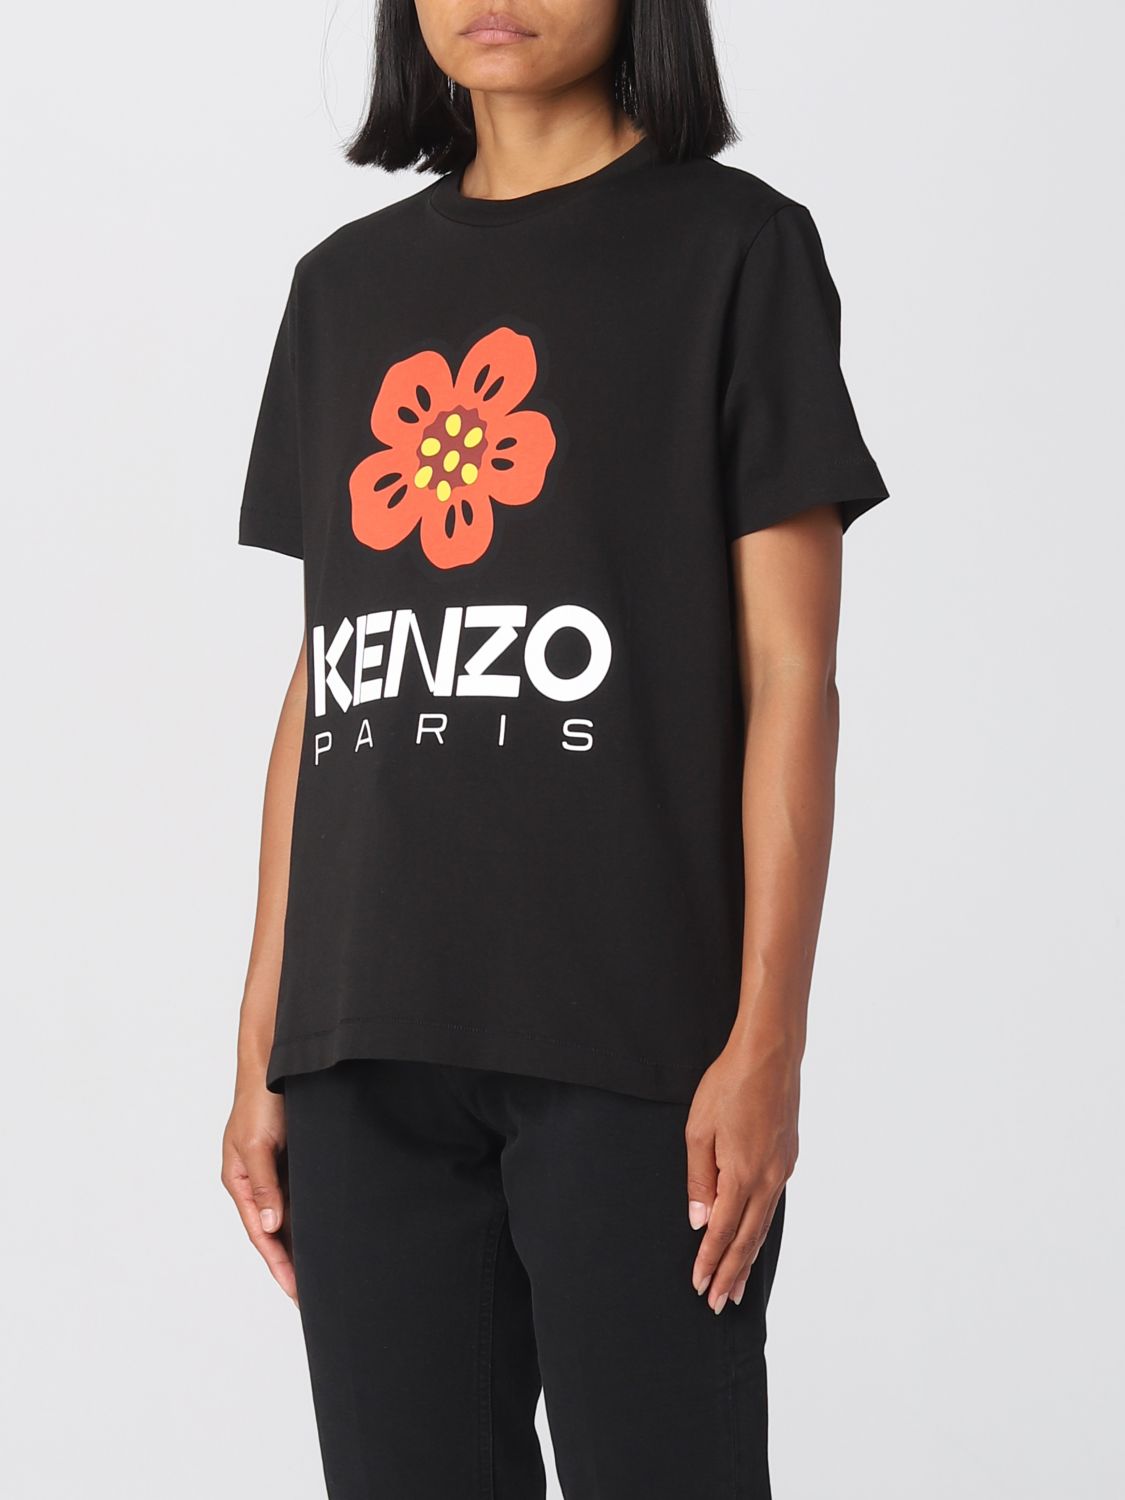 【新品未使用】KENZO Tシャツ Sサイズ レディース